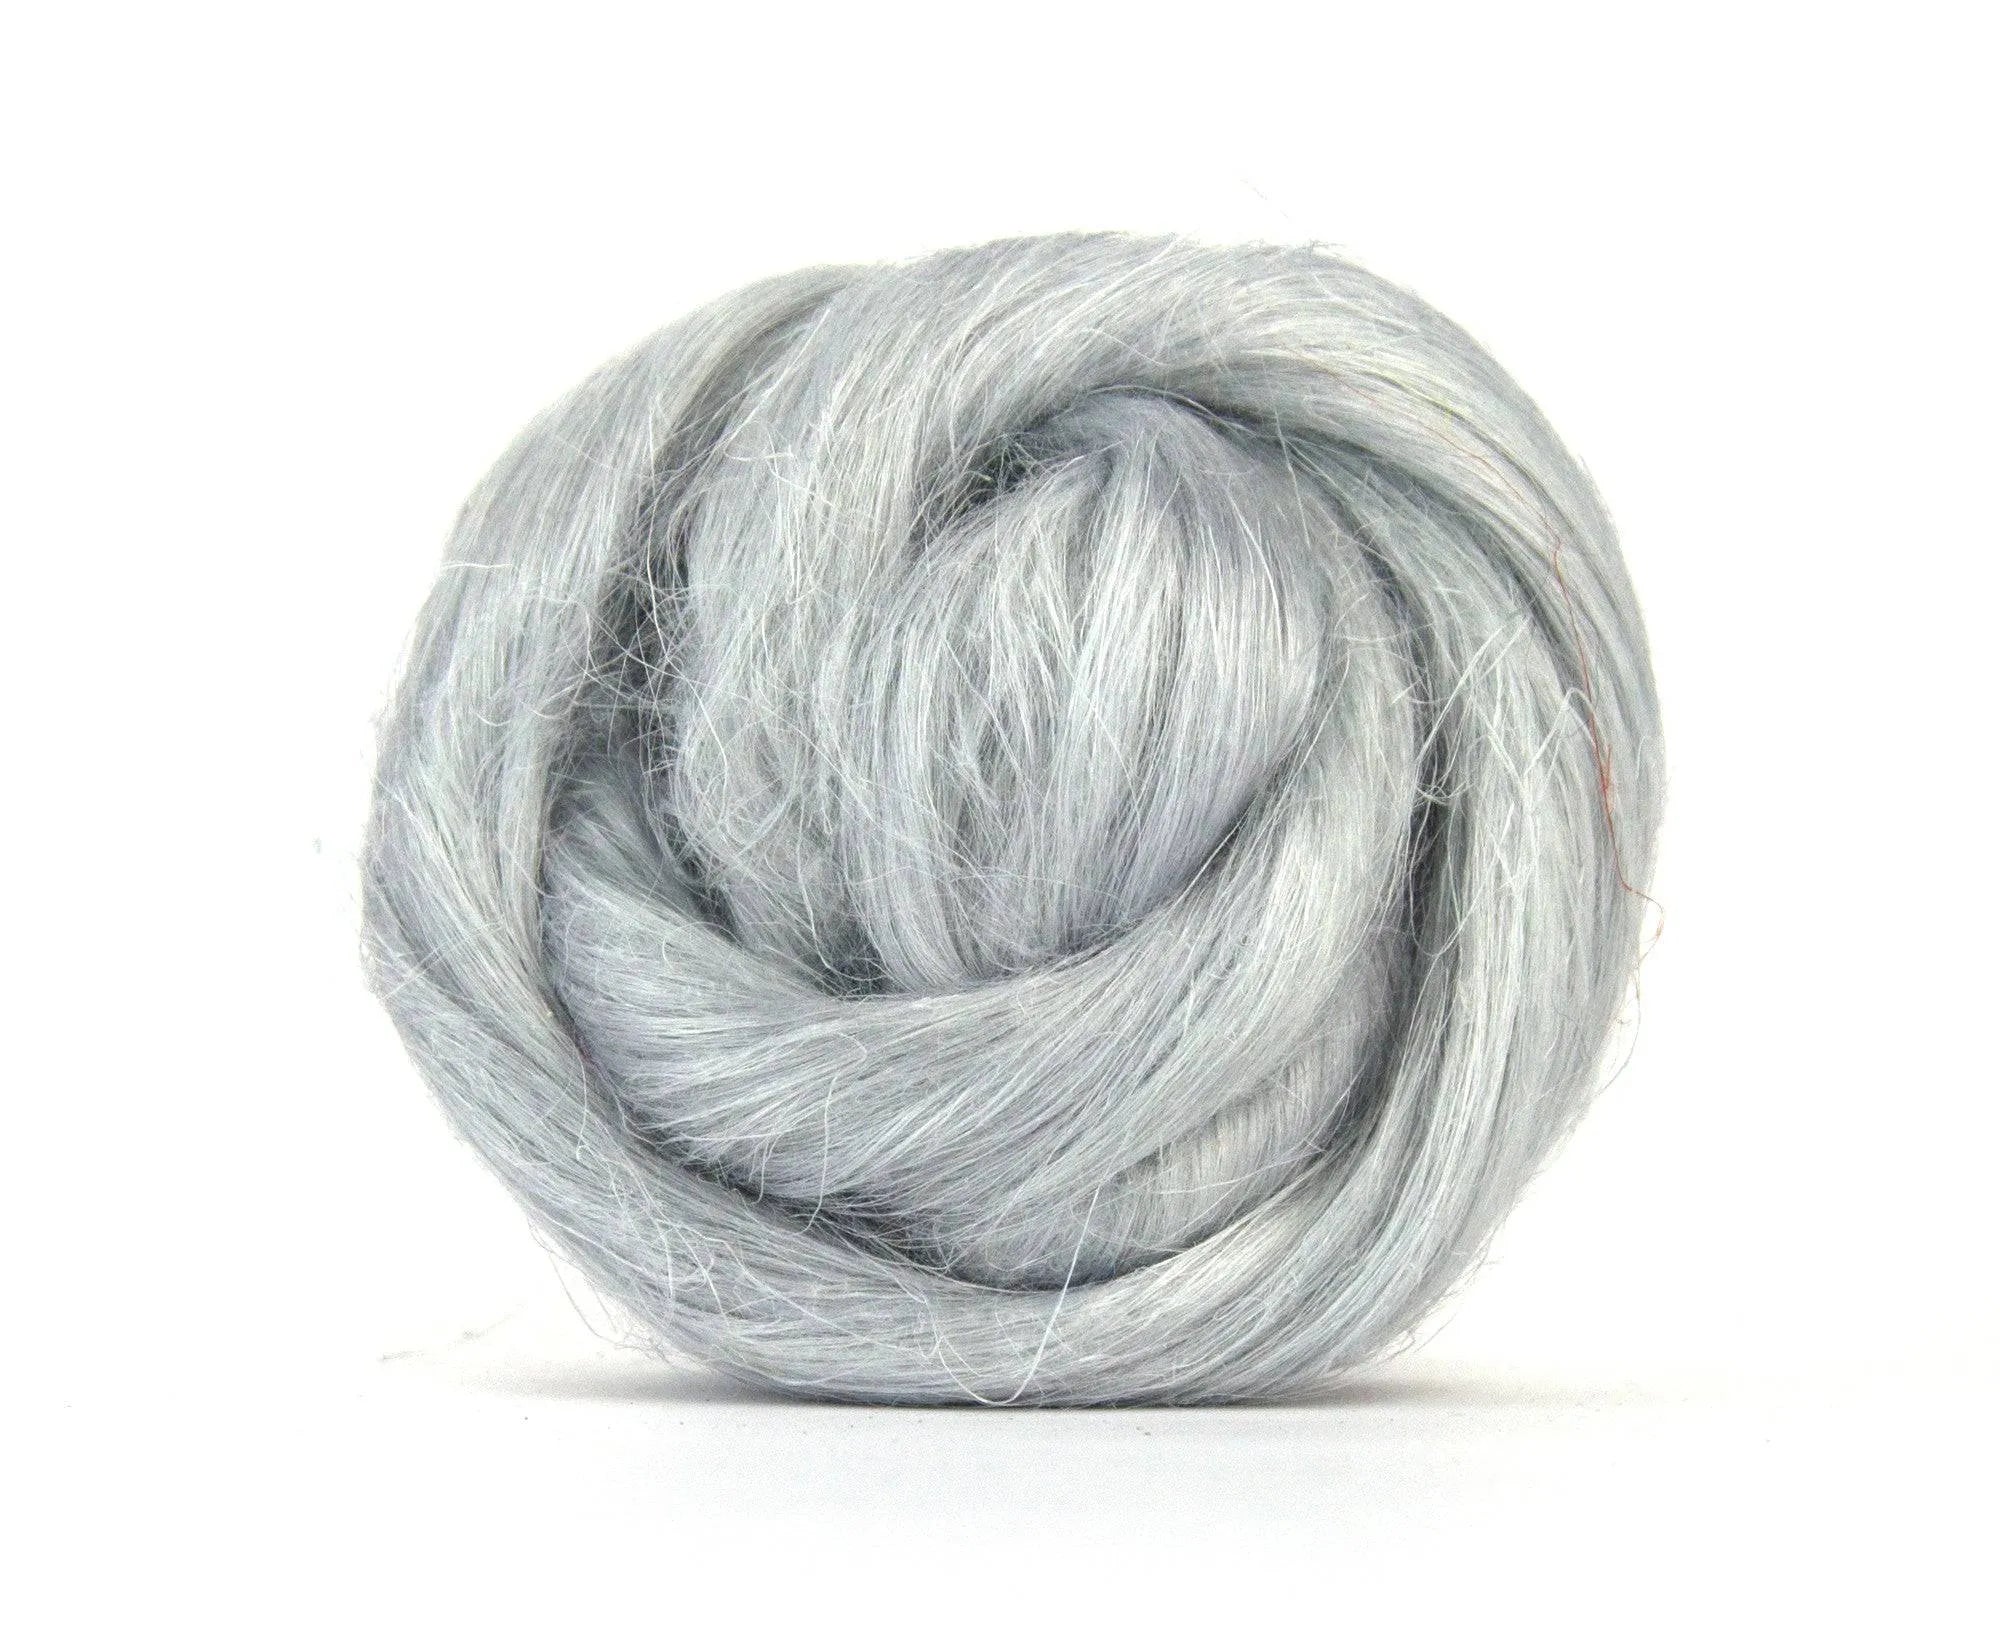 Pillow Flax/Linen Top - World of Wool